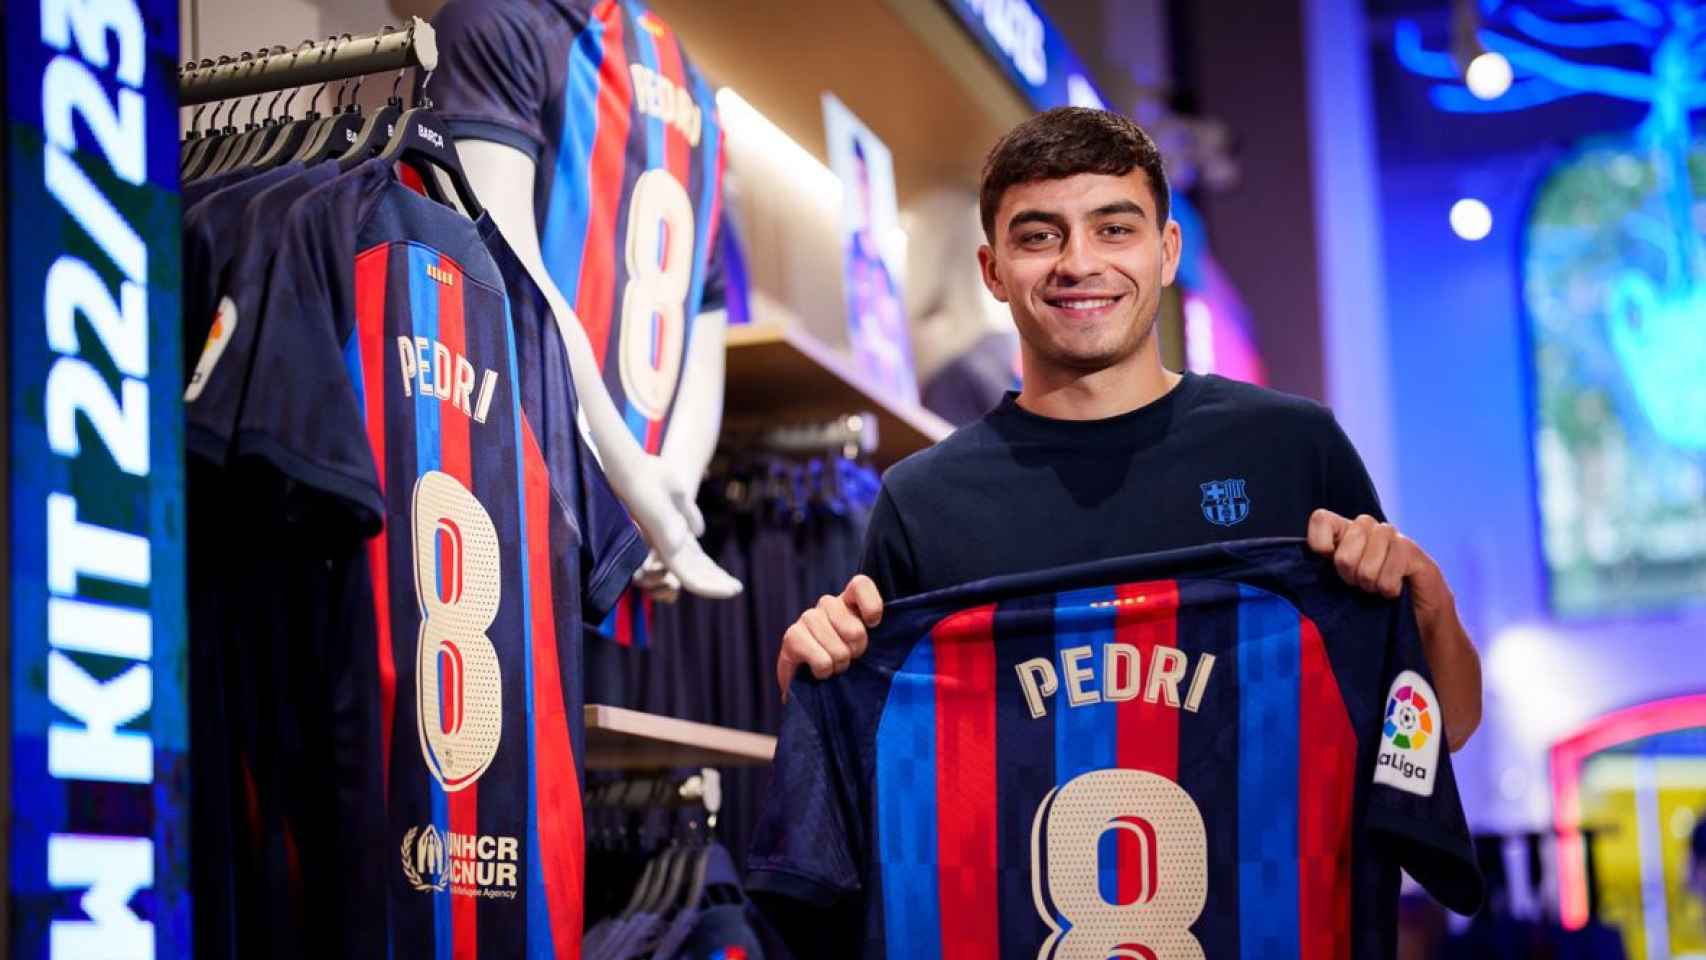 Pedri posa con la camiseta del Barça en una tienda oficial del club / FCB